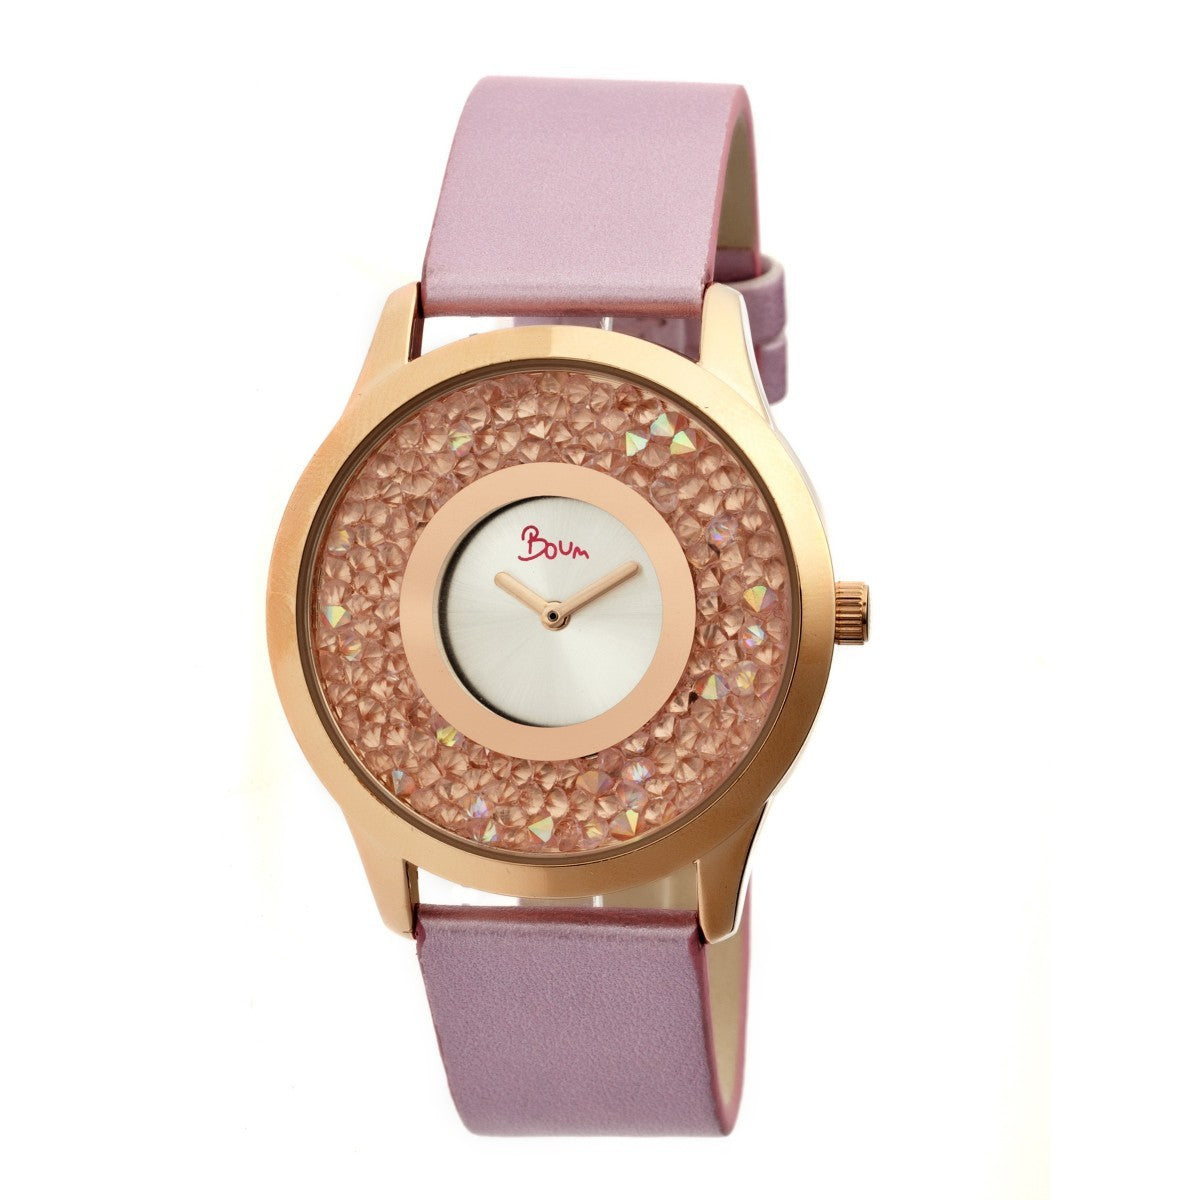 Boum Clique Crystal-Dial Ladies Bracelet Watch - Rose Gold/Pink - BOUBM2506